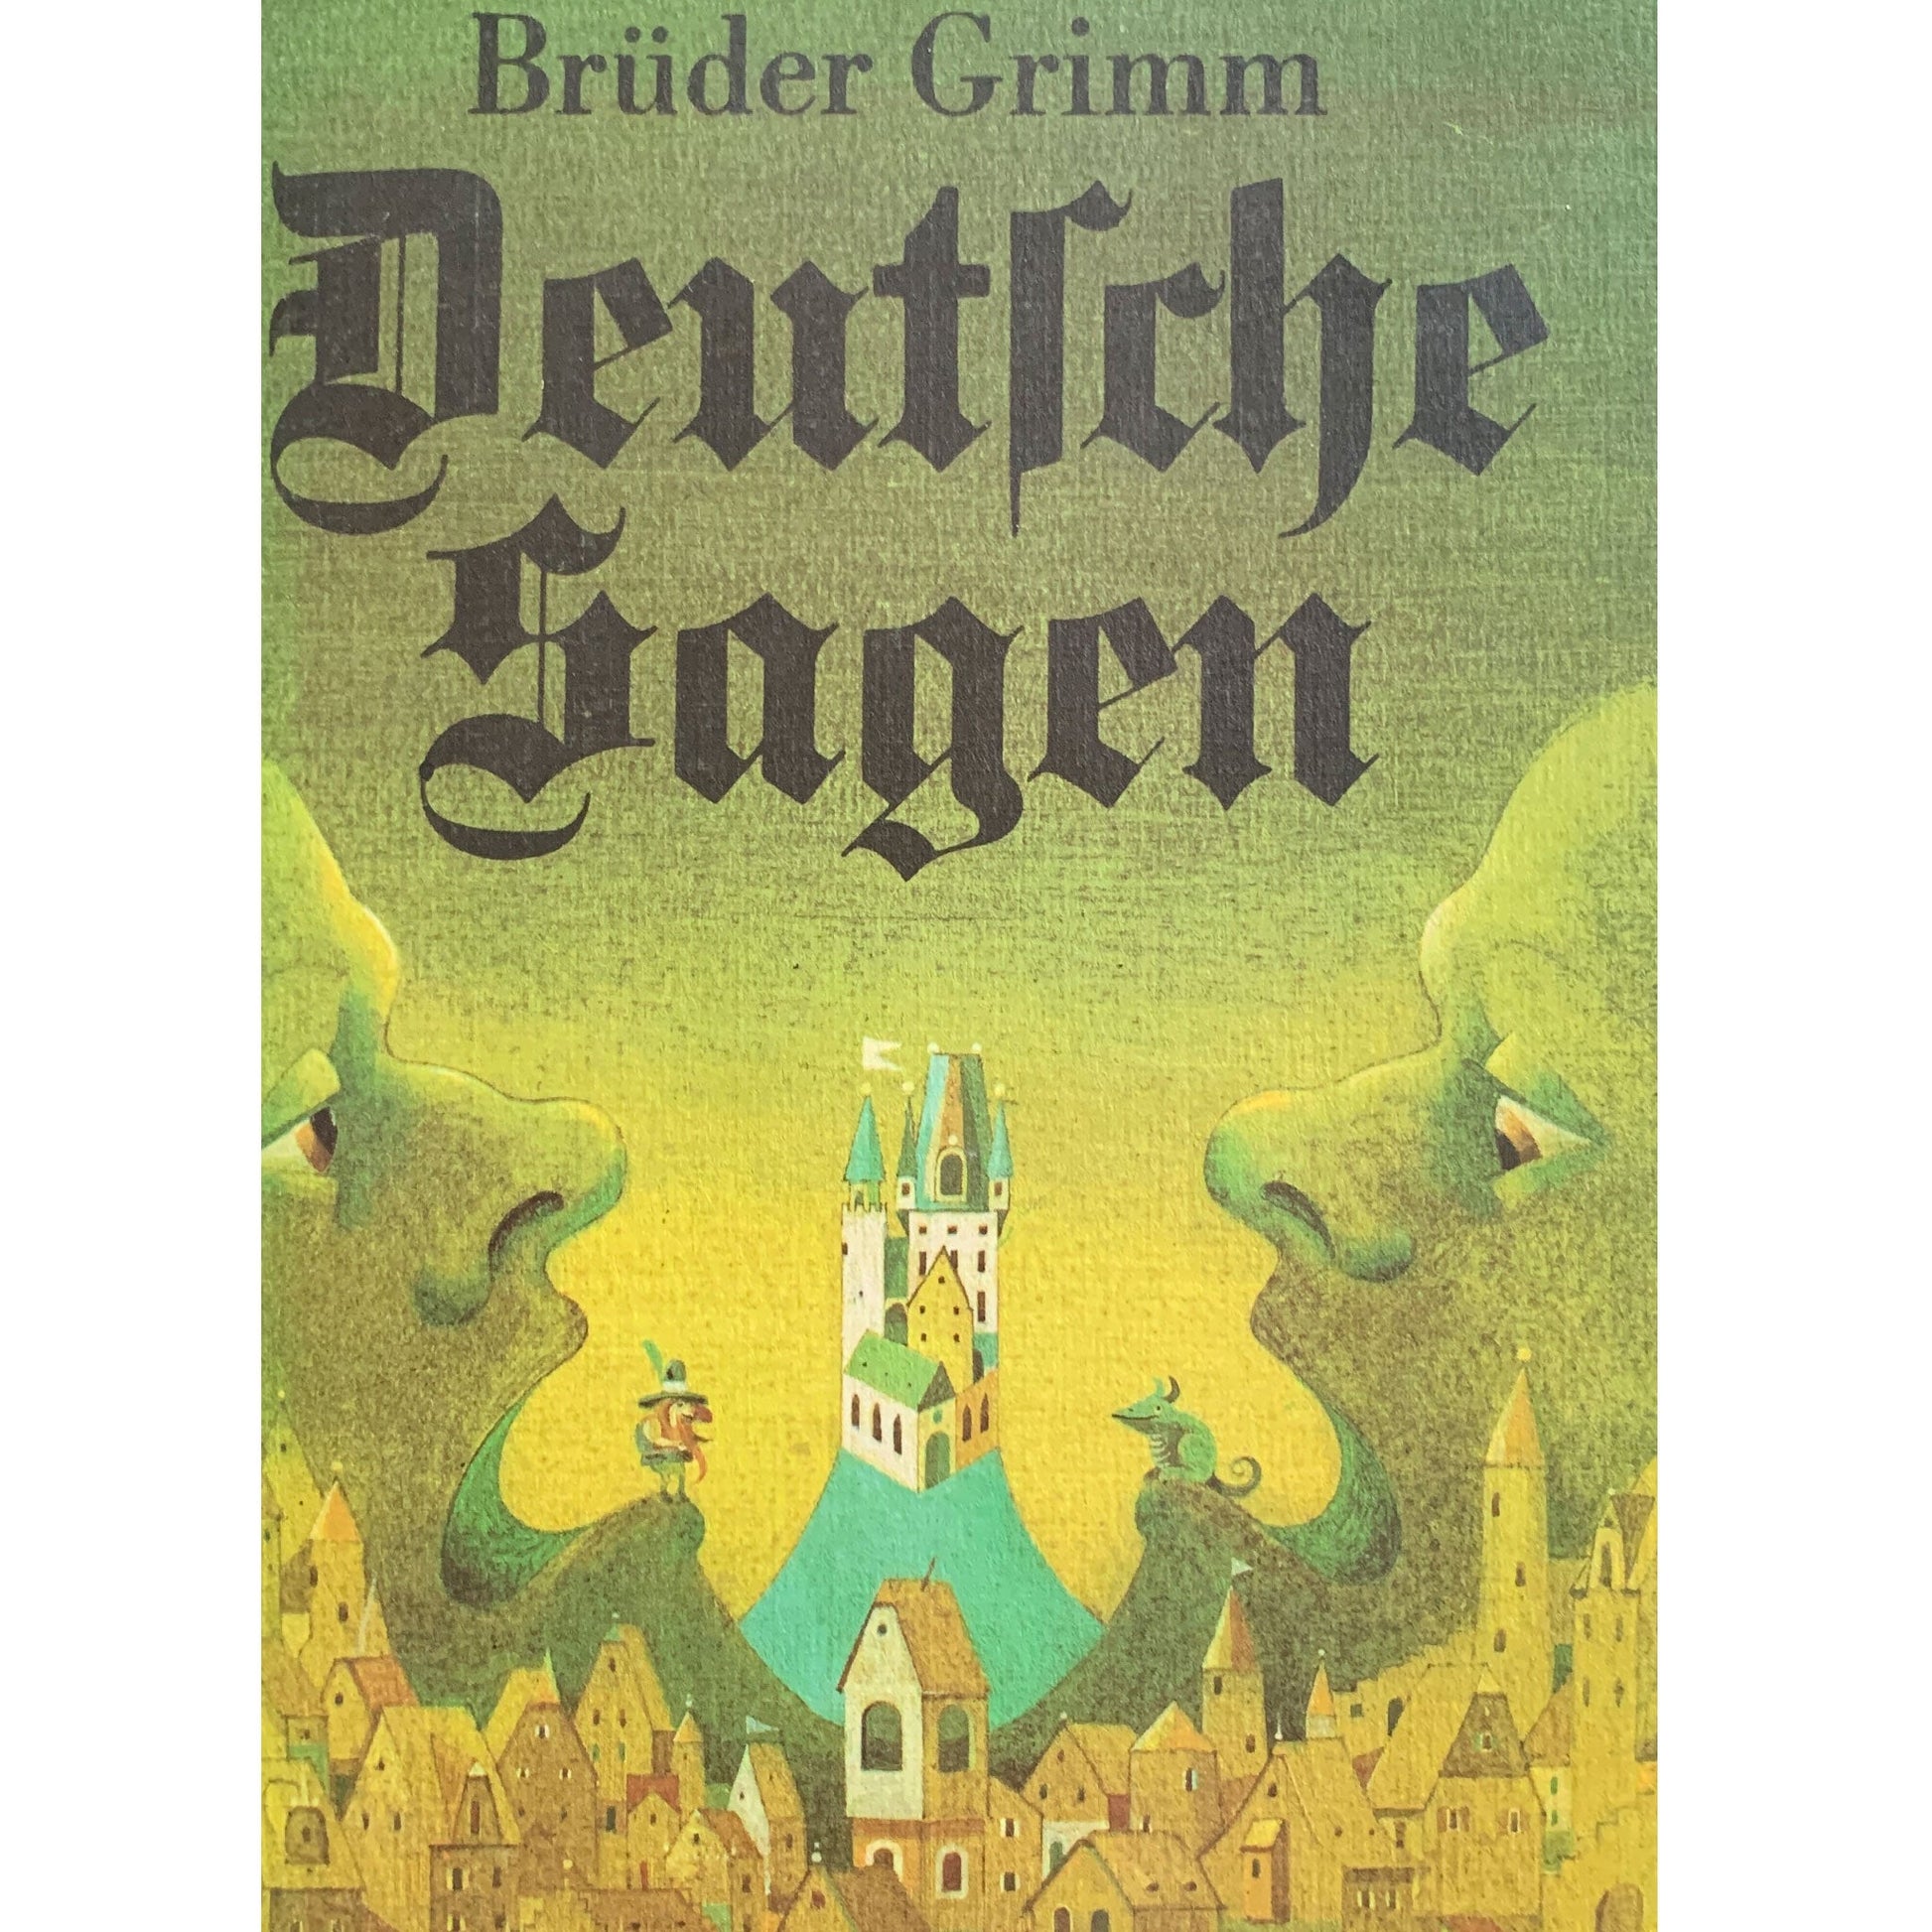 Deutsche Sagen der Brüder Grimm